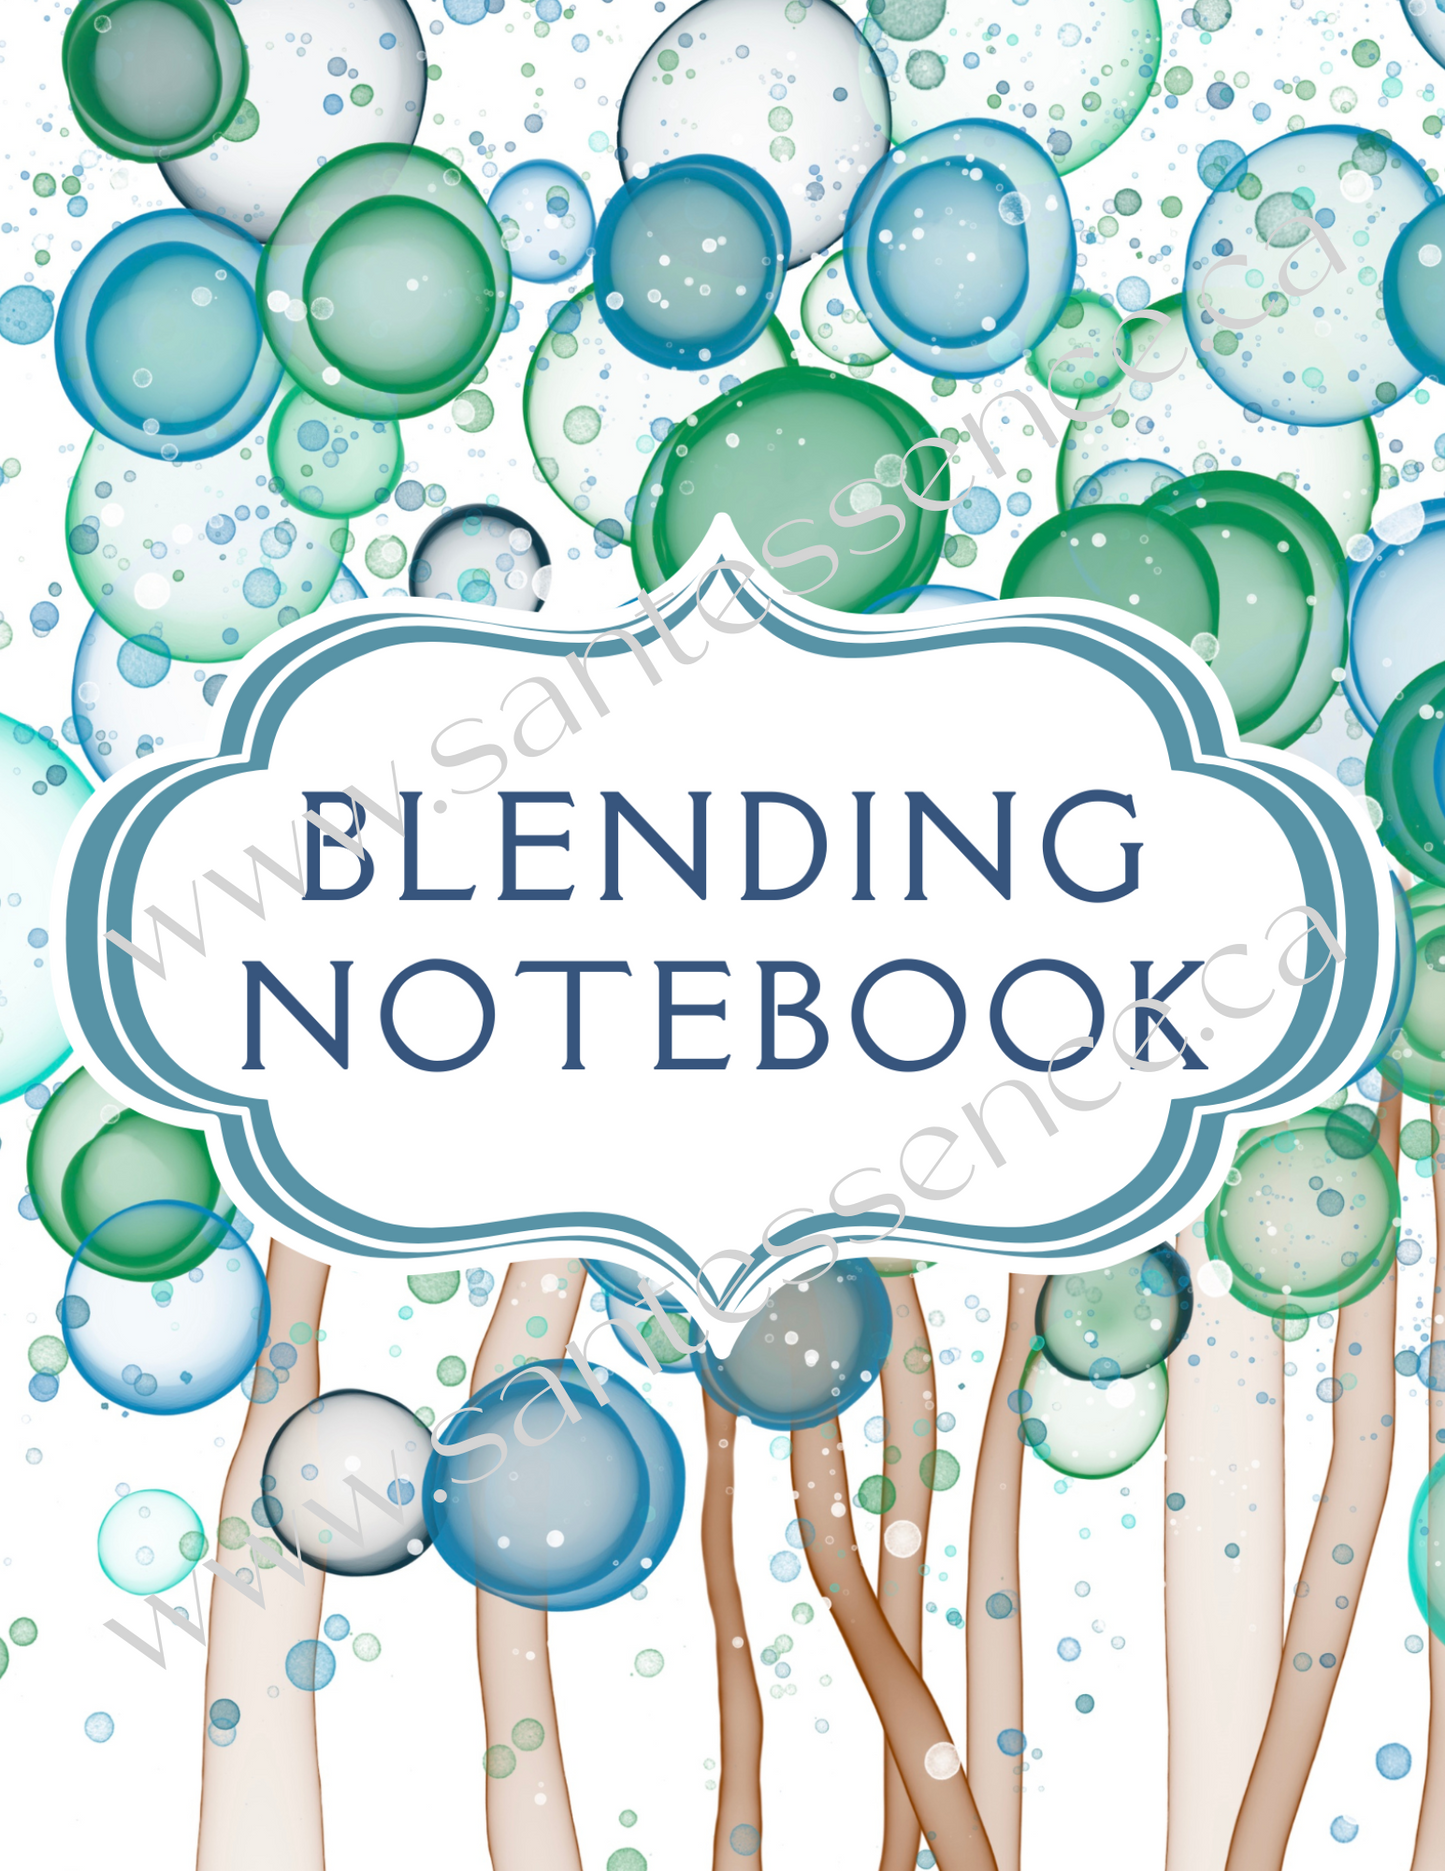 Blending Notebook Digital Download